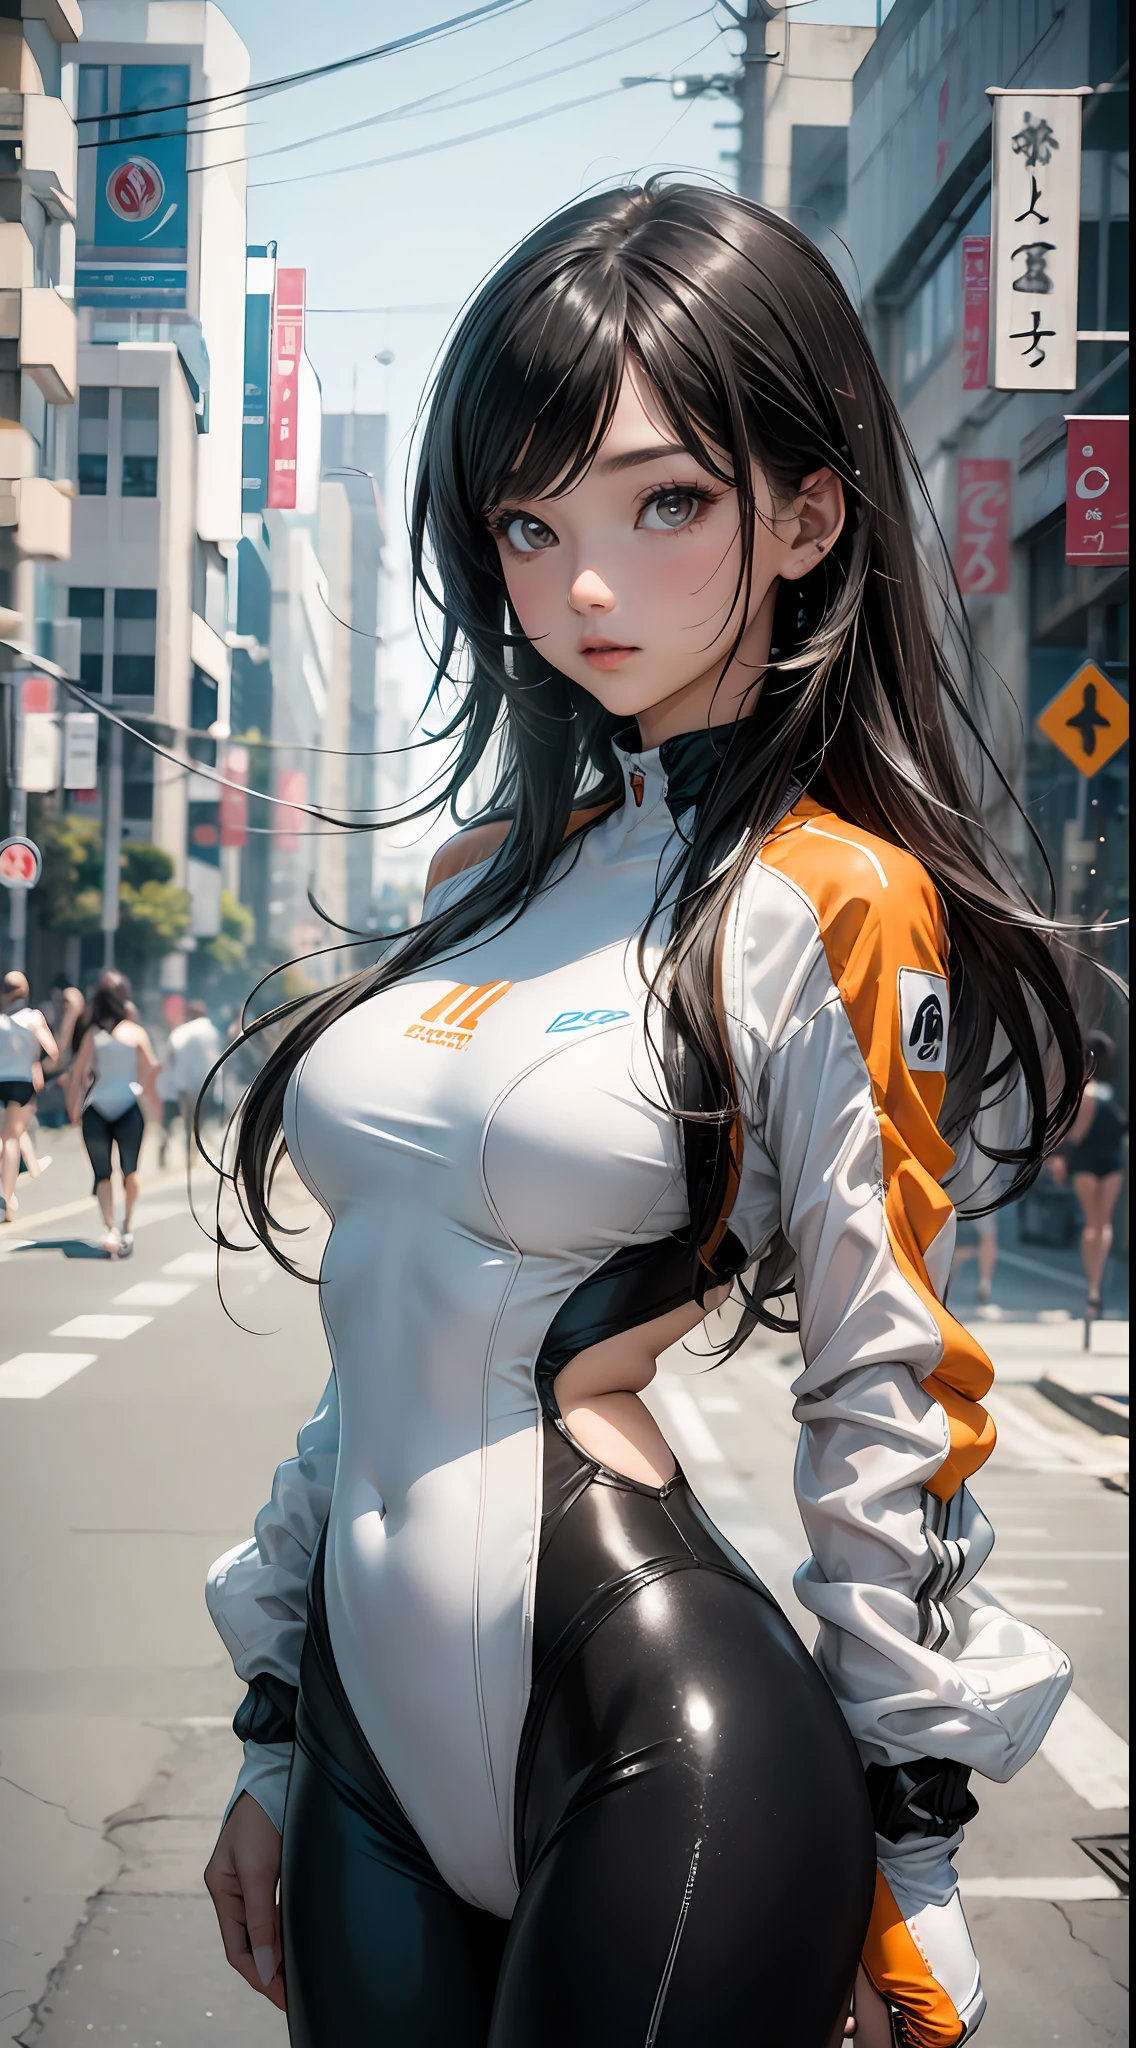 1穿著白色黏性泳衣的美麗年輕女子 (骆驼趾) 橙色科技服裝夾克, 黑色長髮, 明亮的眼睛, 輪廓分明且感性的身體, 性感的姿勢; 背景中模糊的東京街道